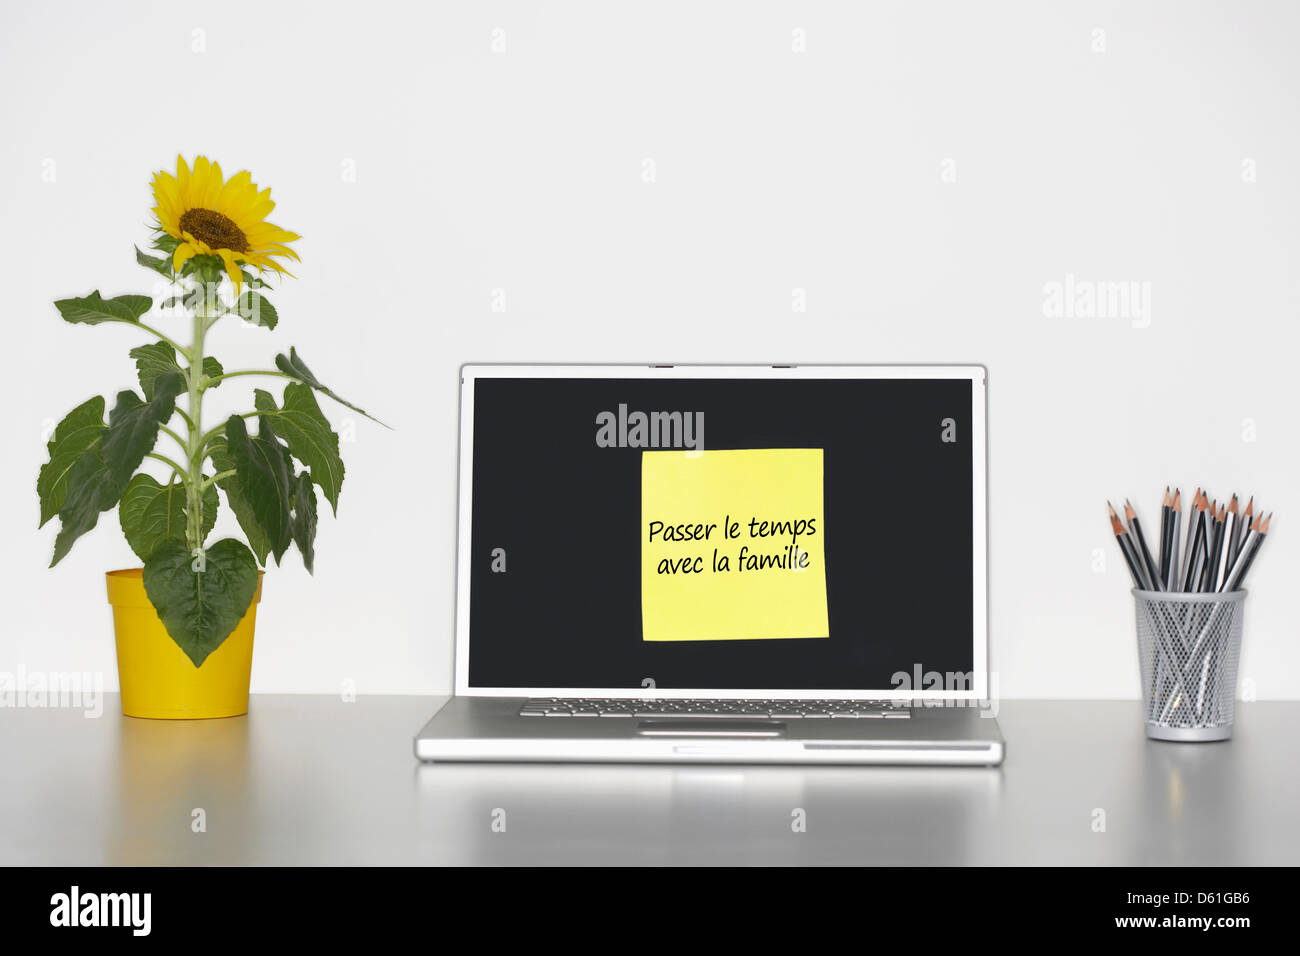 Sonnenblumen Pflanze Schreibtisch klebrig Briefpapier französische Laptop-Bildschirm sagen "Passer le Temps Vec la Famille" Stockfoto